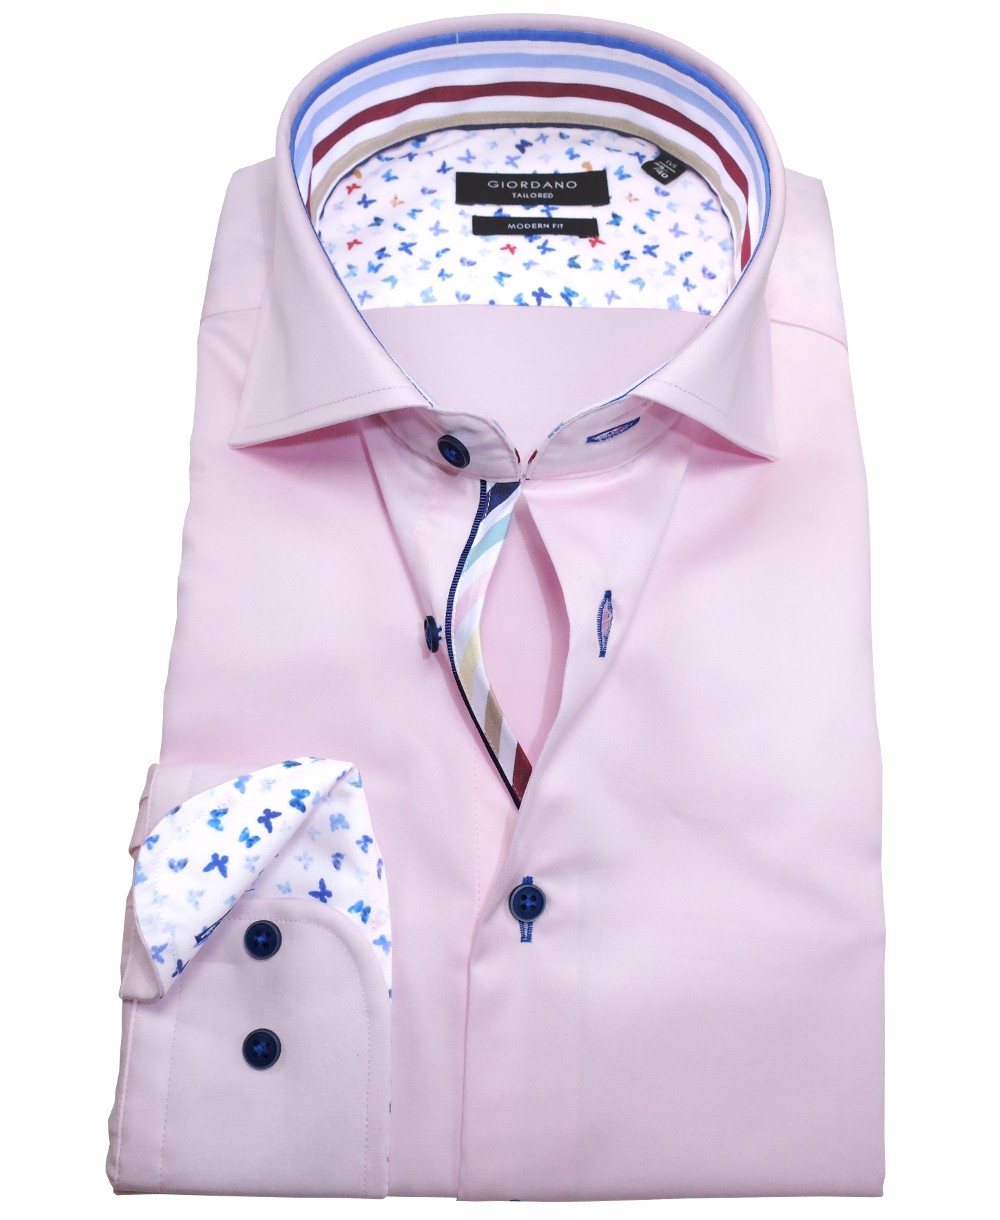 Giordano Langarmhemd Modern - Marken weiss fairen Herrenmode führender Hochwertige mit rosa zu Patches Fit bunten